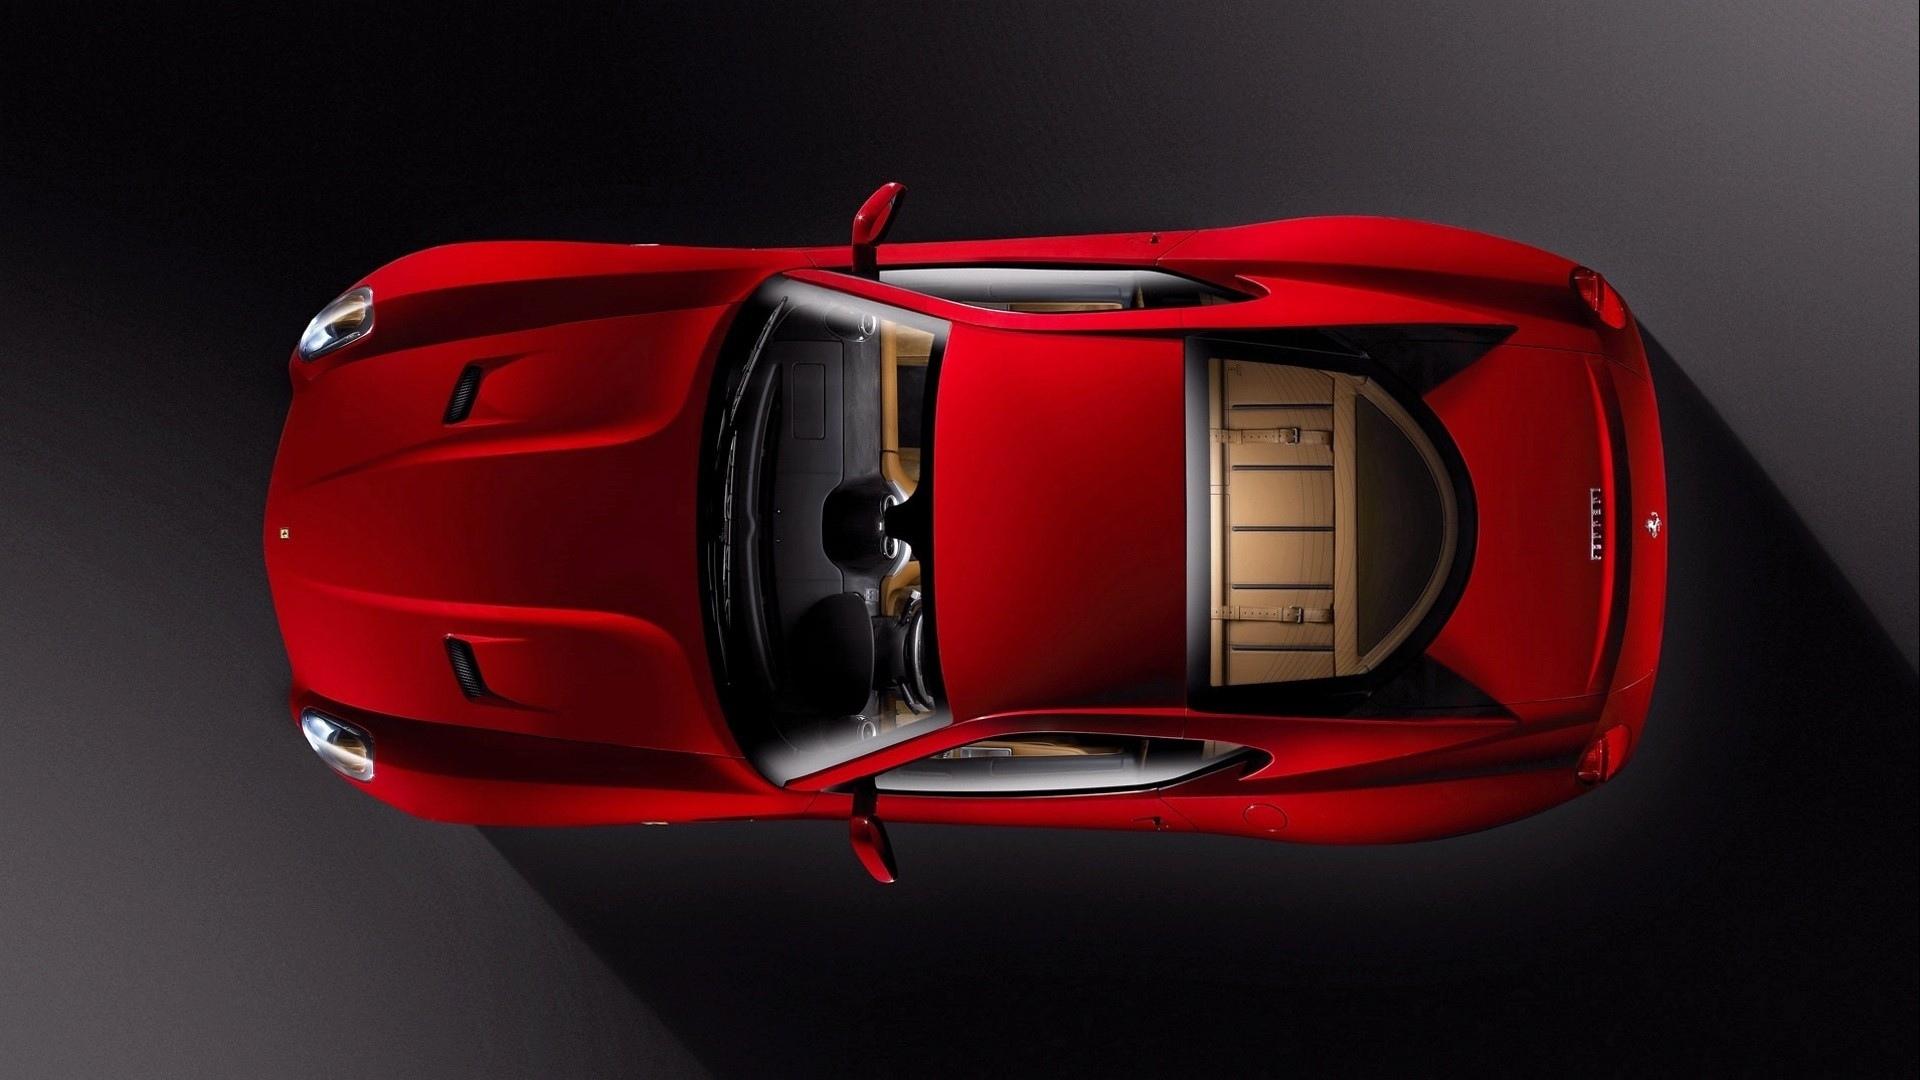 Ferrari 599 GTB at 1024 x 1024 iPad size wallpapers HD quality